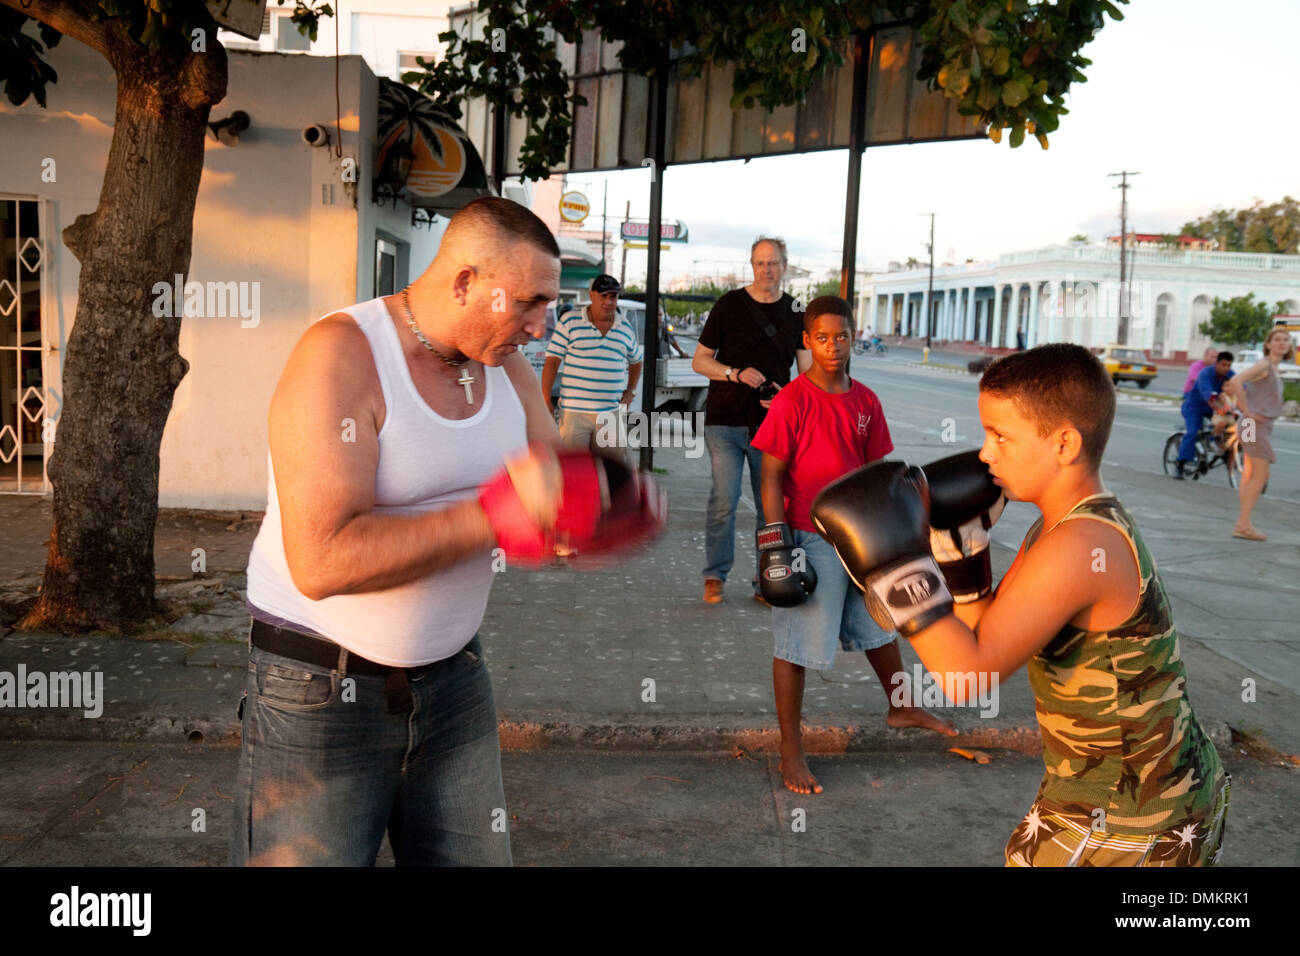 Les jeunes garçons ayant une leçon de boxe dans la rue, La Havane, Cuba, Amérique Latine, Caraïbes - exemple de Cuba et le sport vie Banque D'Images